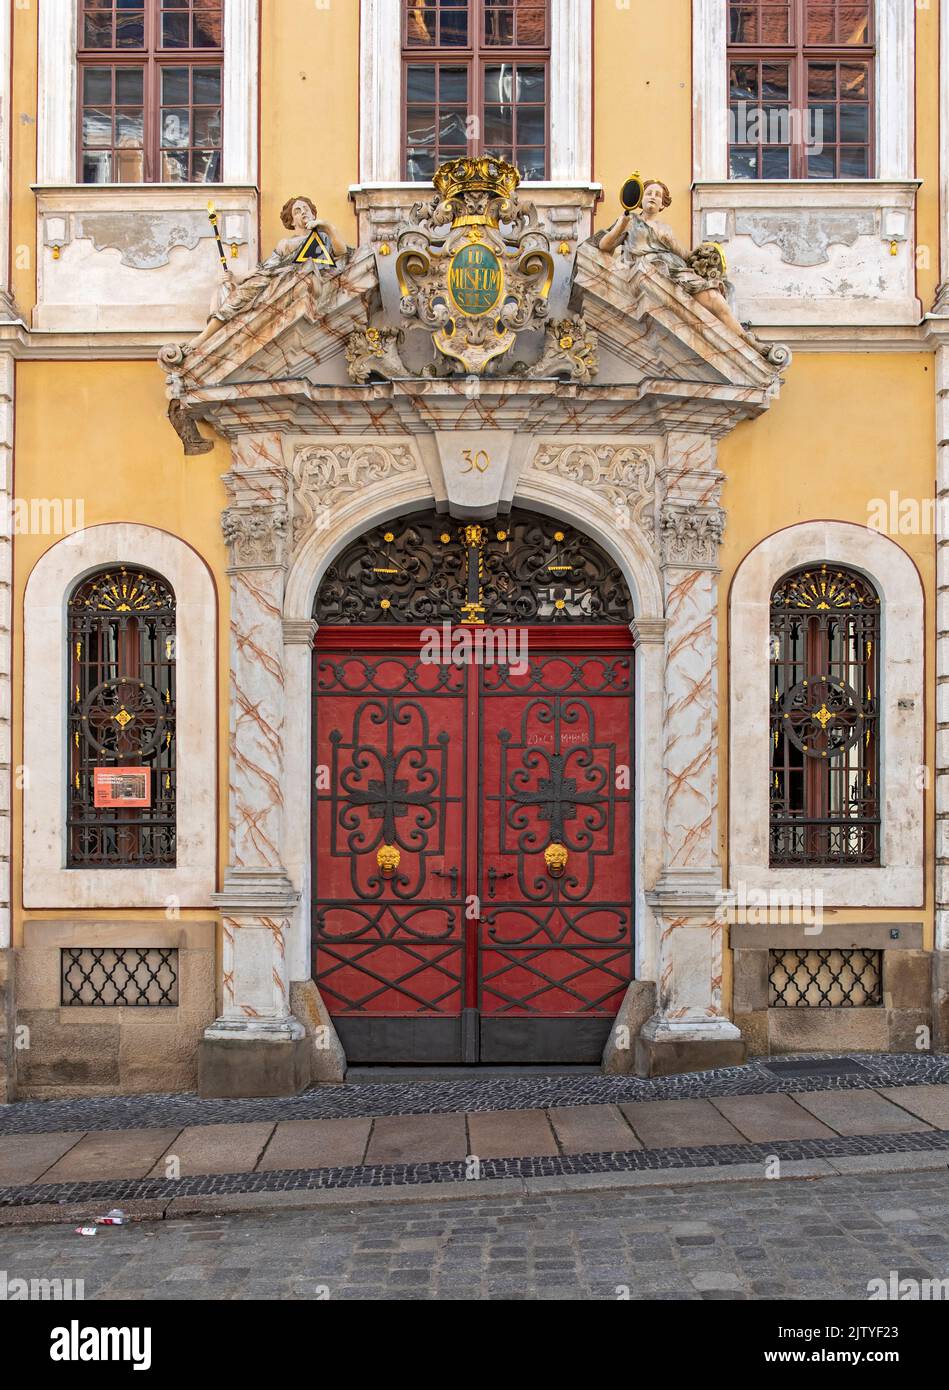 Portail de la Maison baroque (Barockhaus), Neissstrasse, Görlitz, Allemagne Banque D'Images